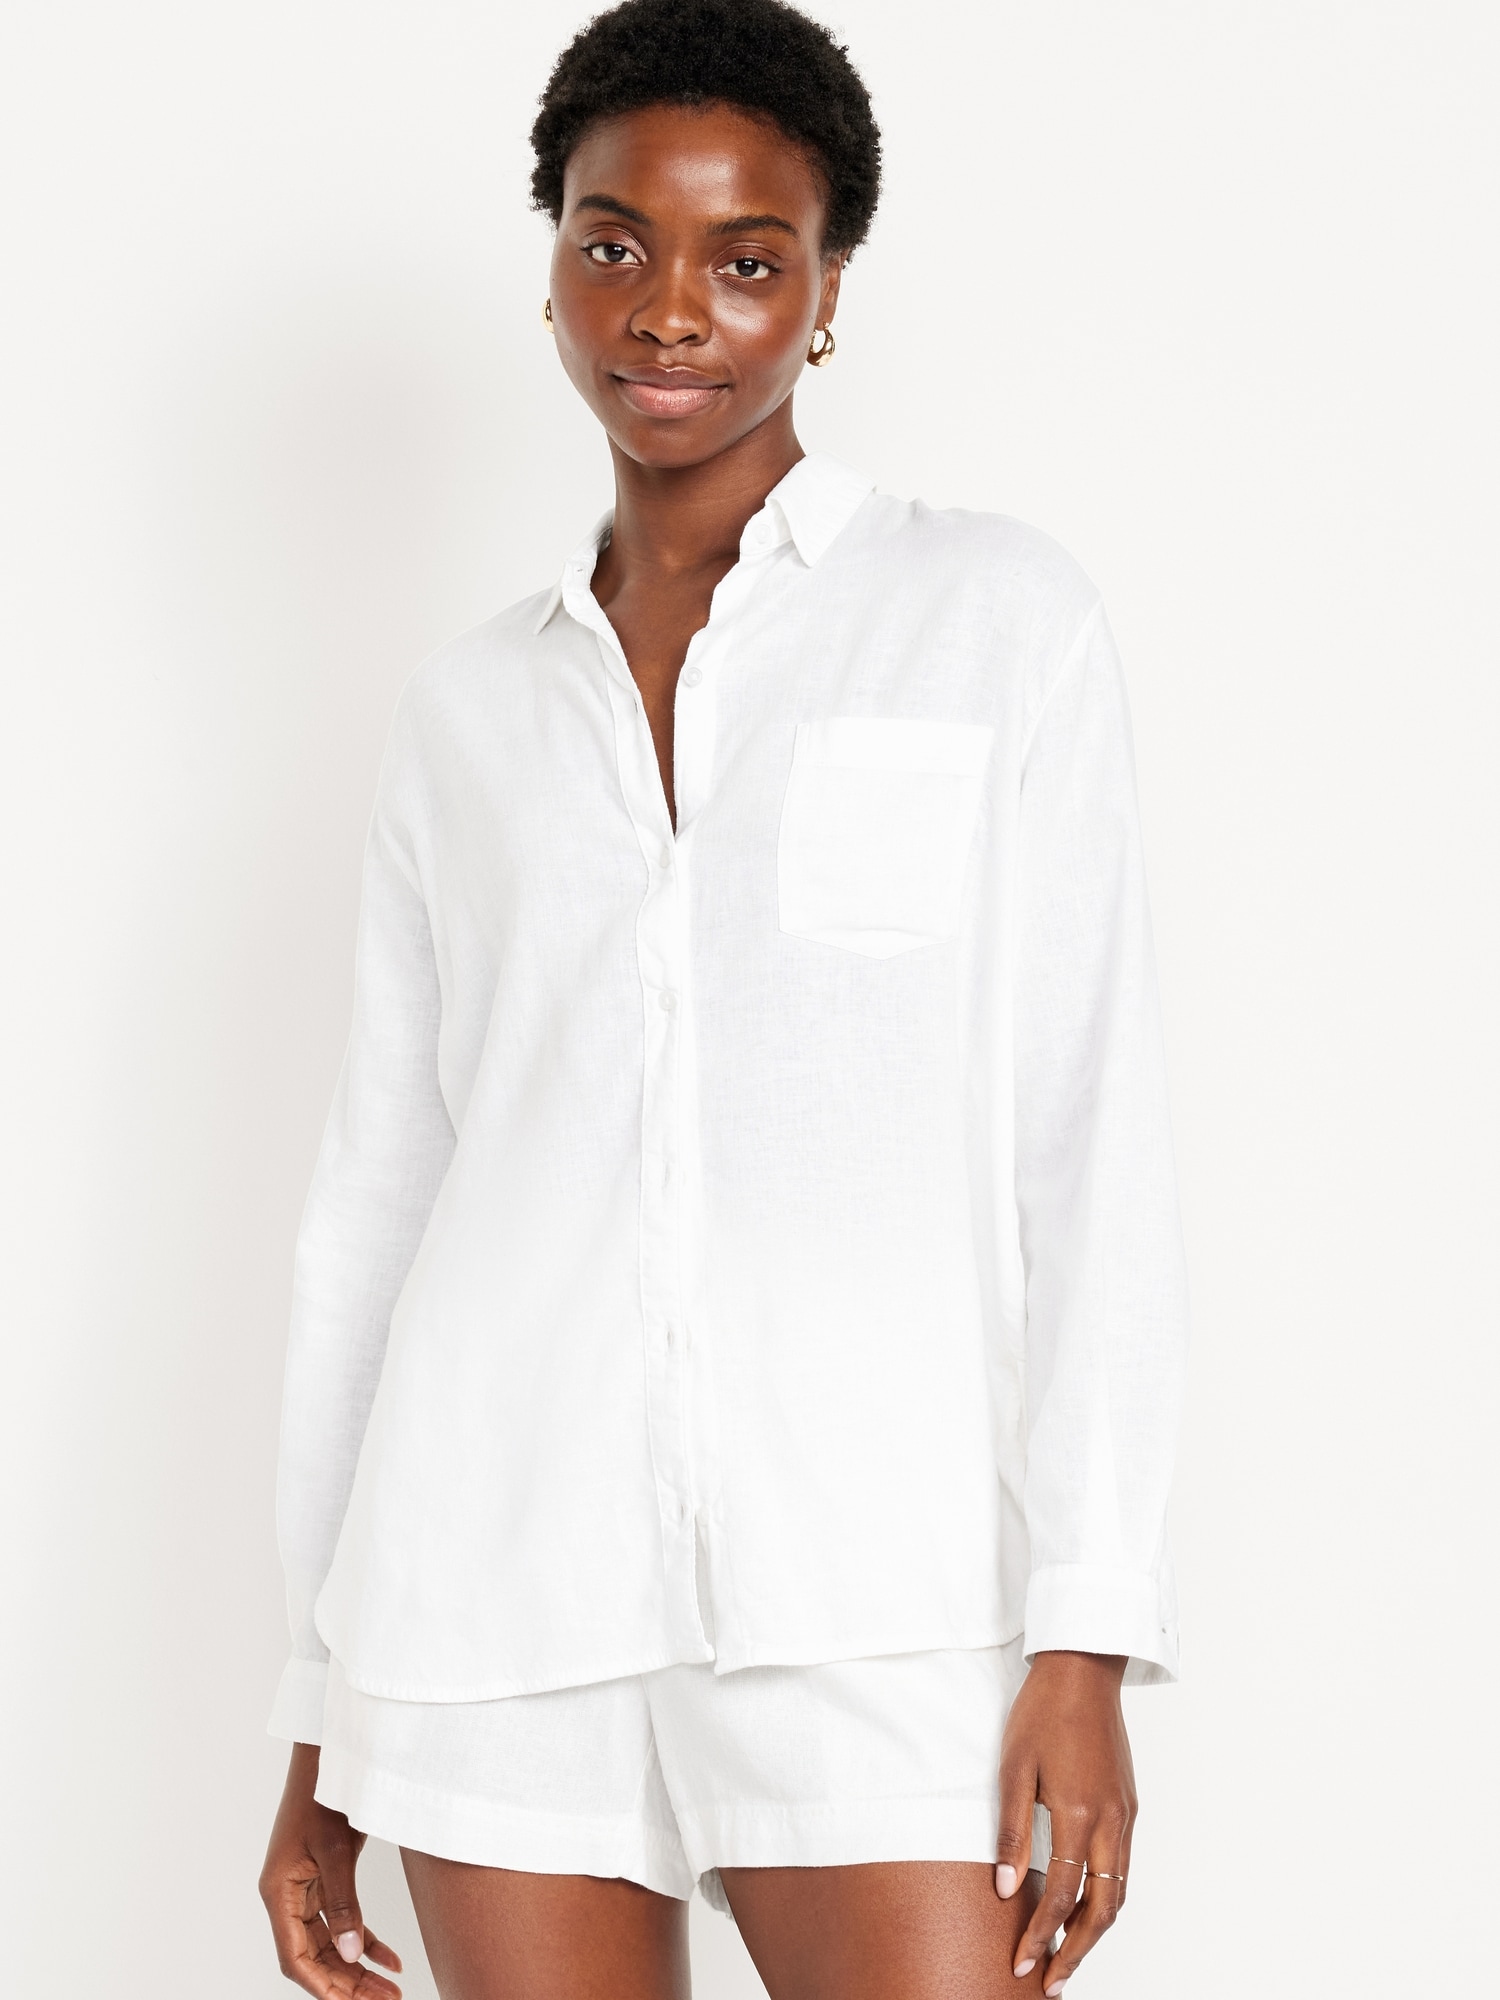 Classic Button-down Collar Men's Linen Shirt SINTRA in White | MagicLinen